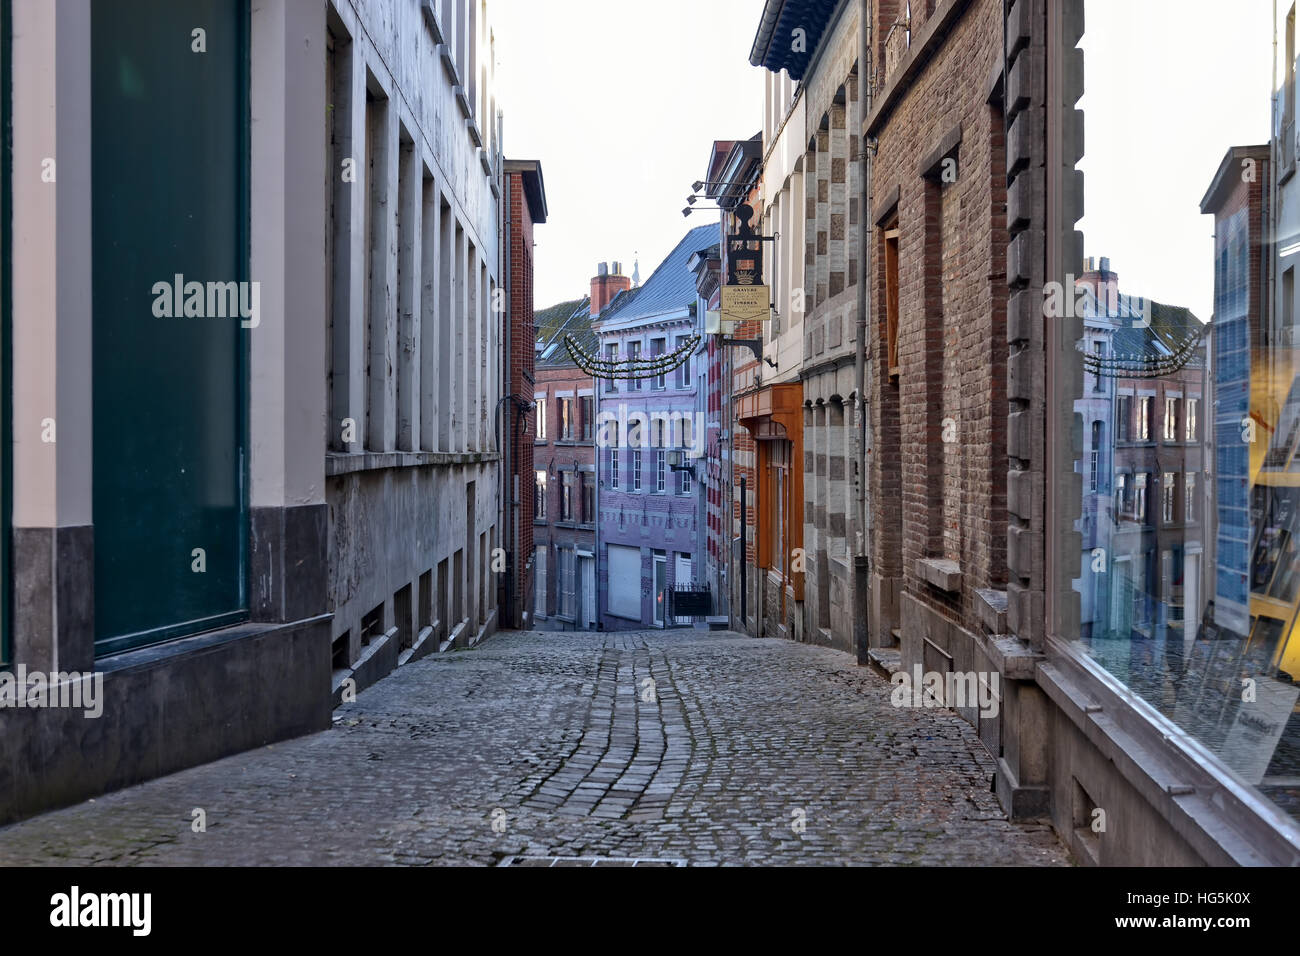 Narrow street in historical center of Mons, Belgium, on December 29, 2016 Stock Photo